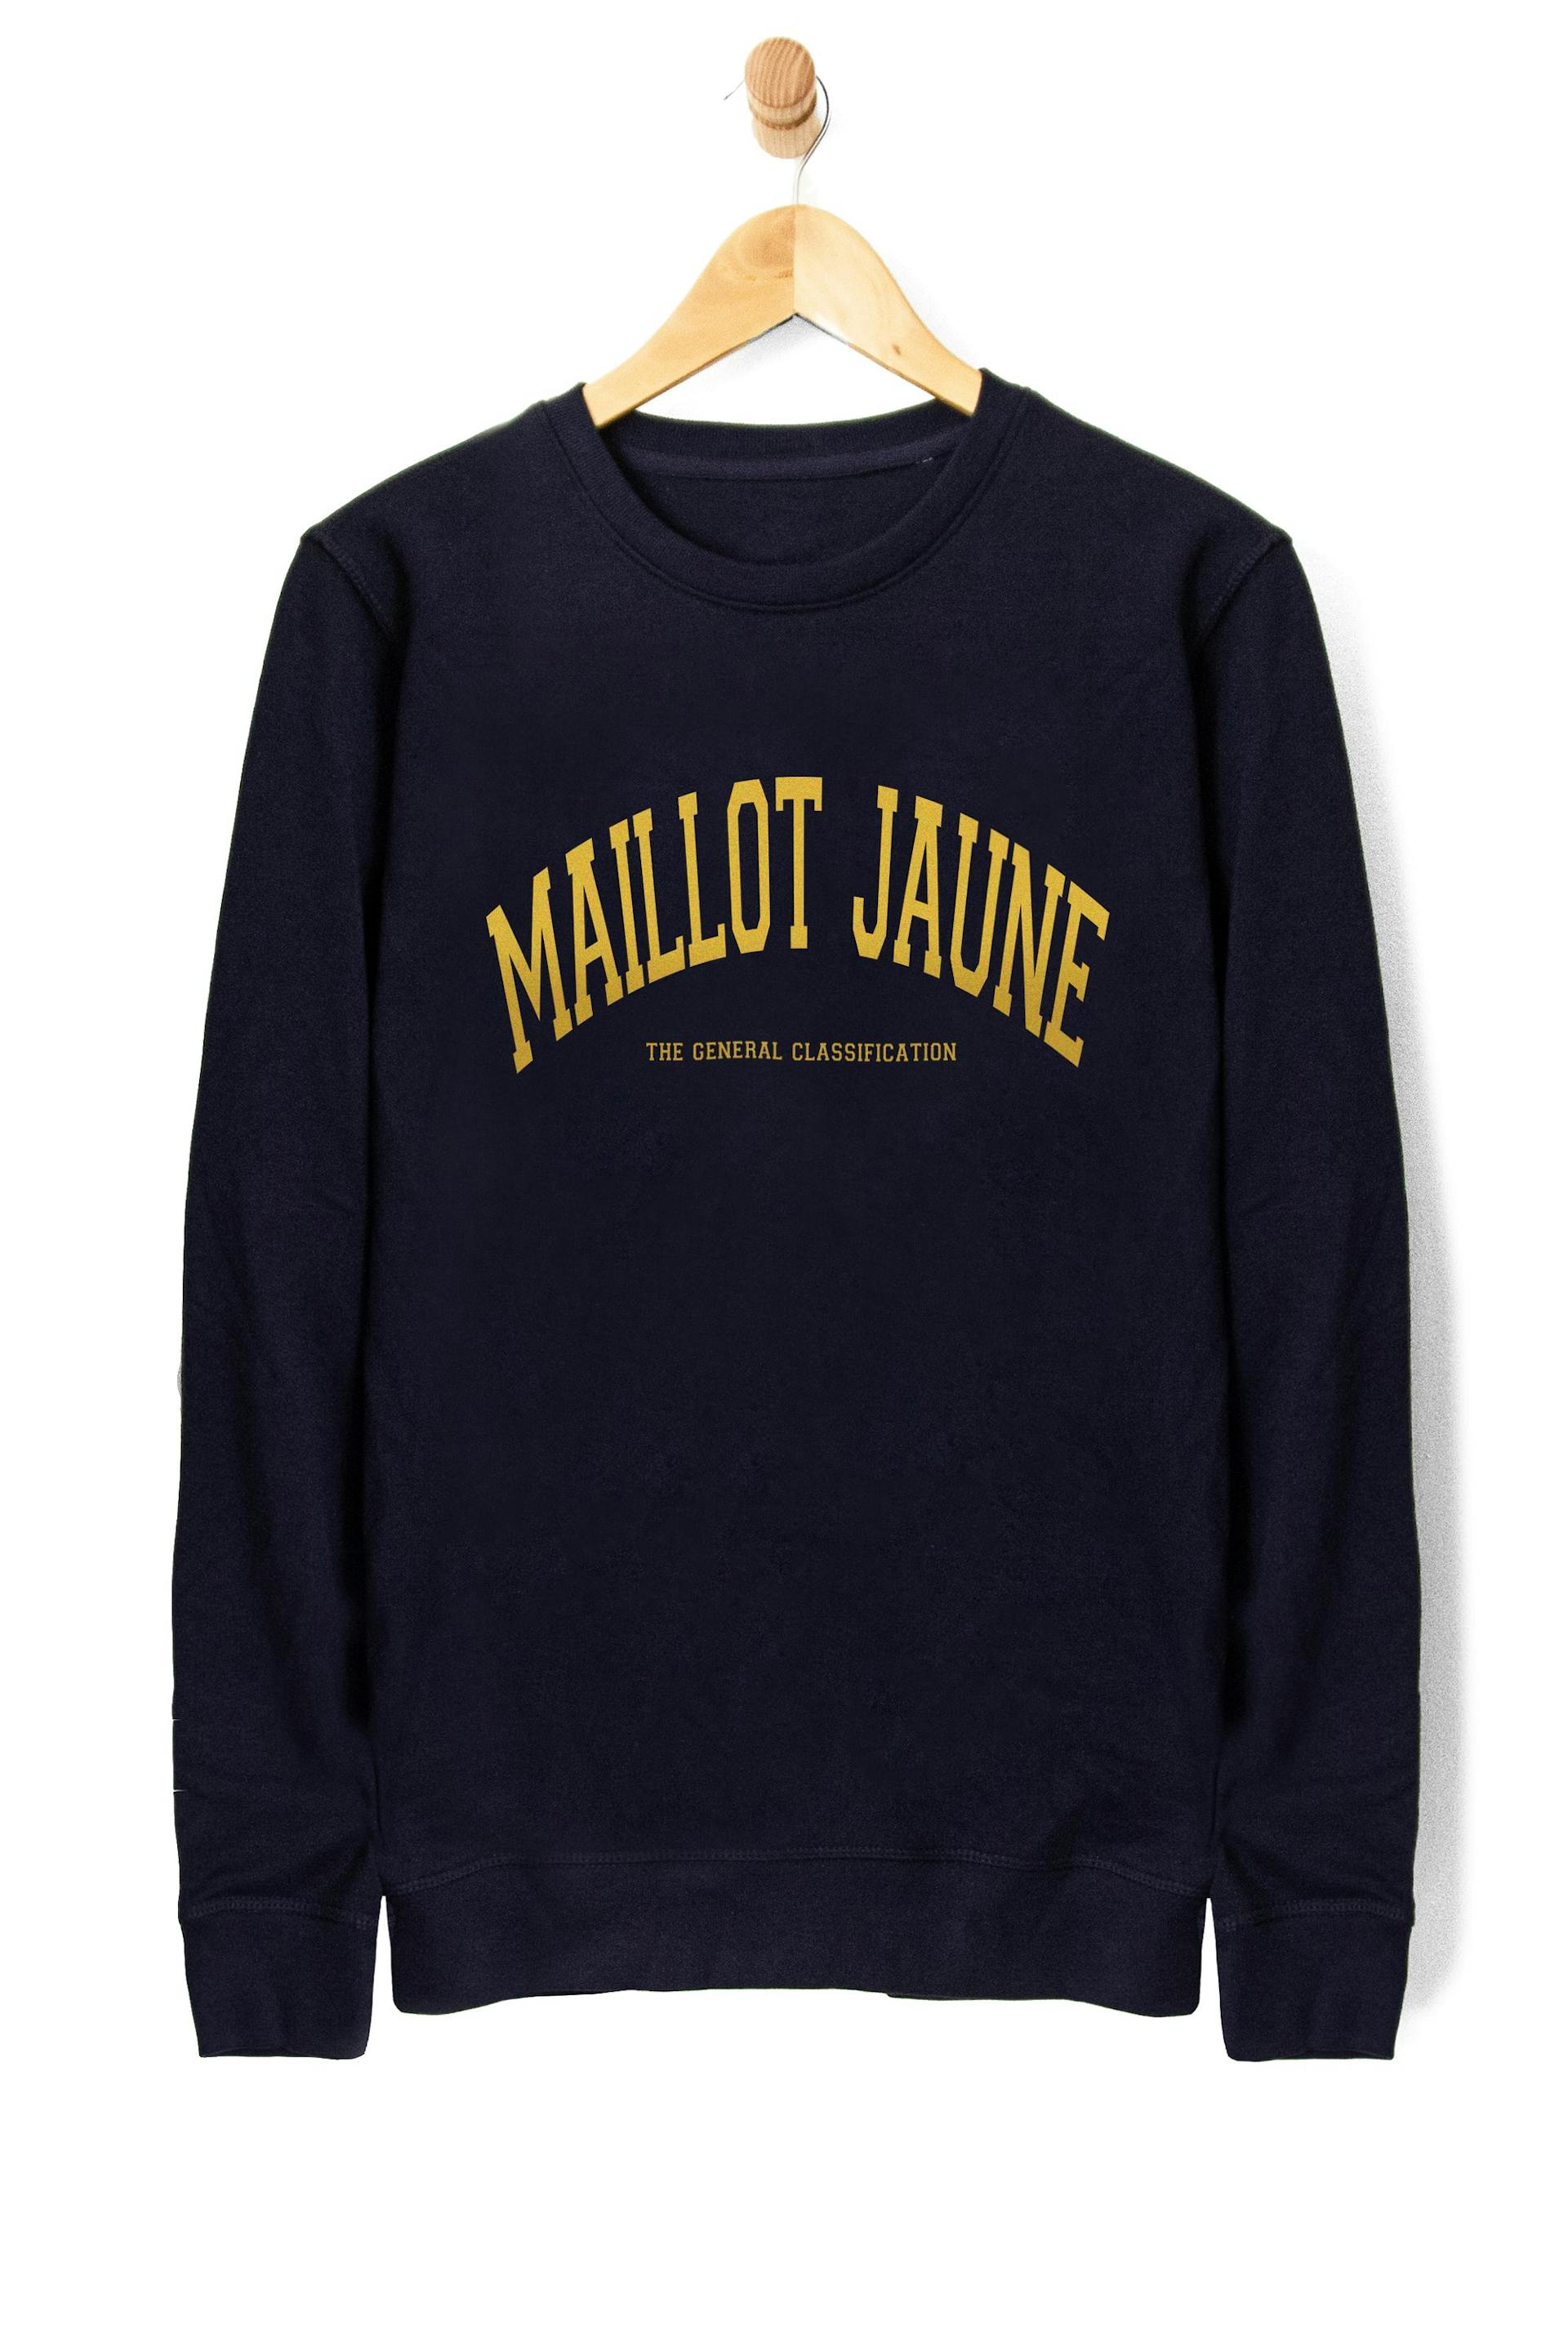 Maillot Jaune Crew Navy